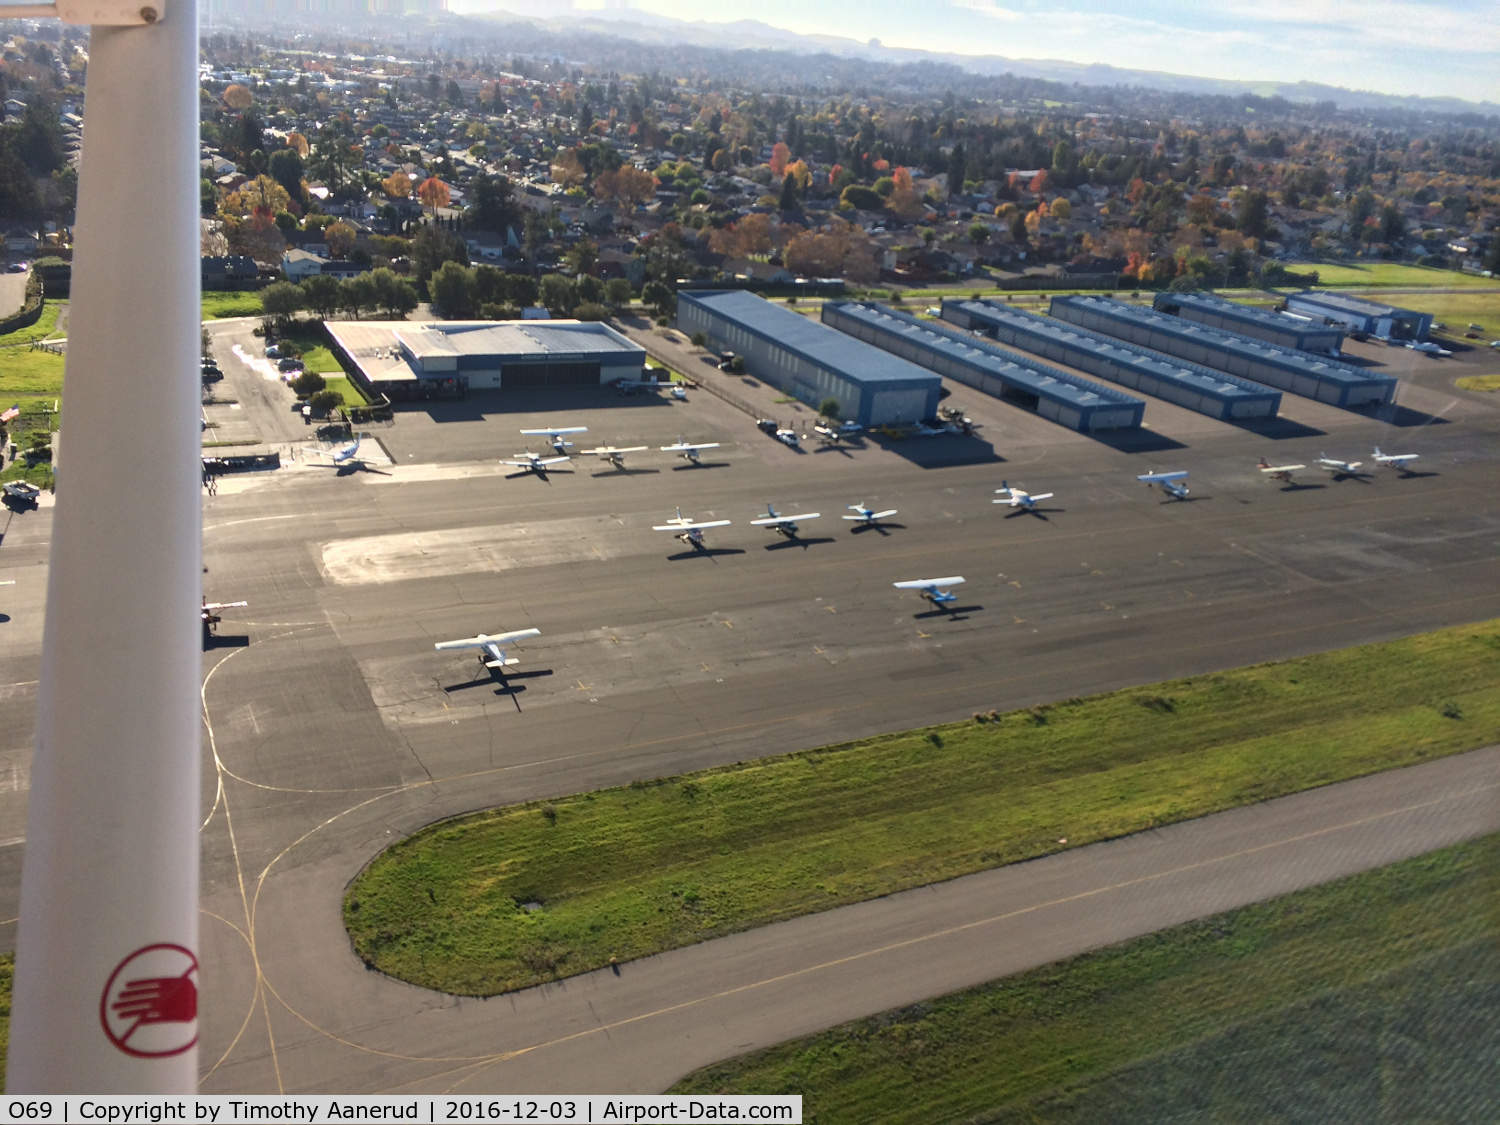 Petaluma Municipal Airport (O69) - Departing to the southeast